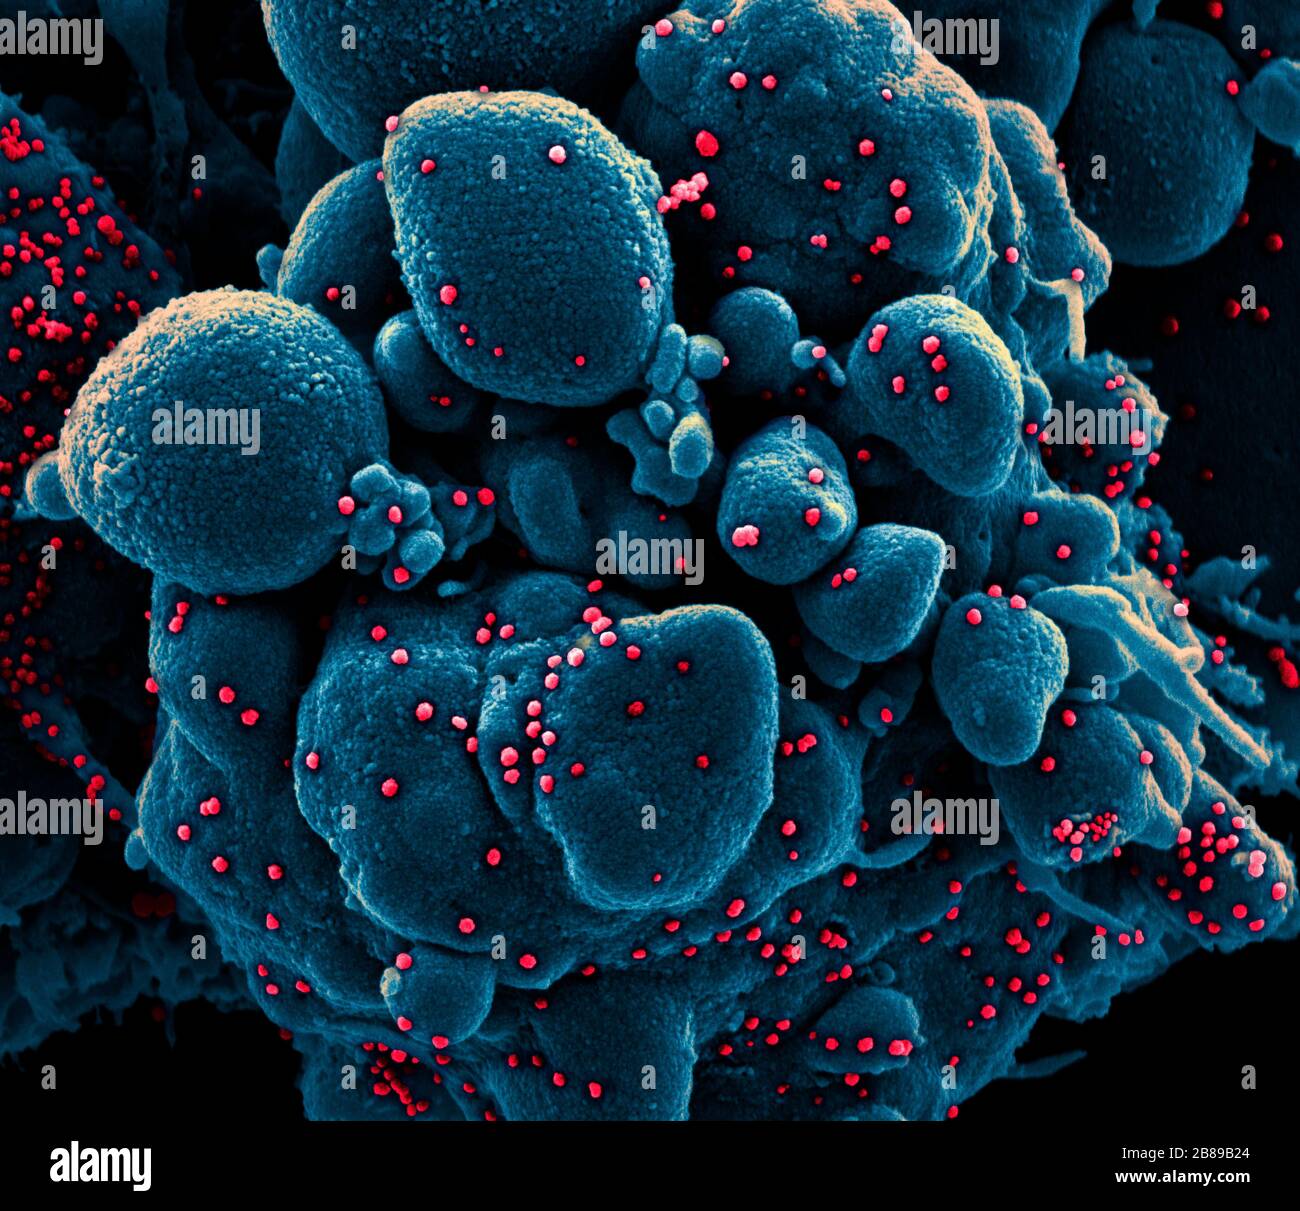 Micrographe électronique de transmission de COVID-19, nouveau coronavirus, cellule apoptotique fortement infectée par les particules du virus SRAS-COV-2, isolé d'un échantillon de patient à l'installation de recherche intégrée NIAID le 18 mars 2020 à fort Detrick, Maryland. Banque D'Images